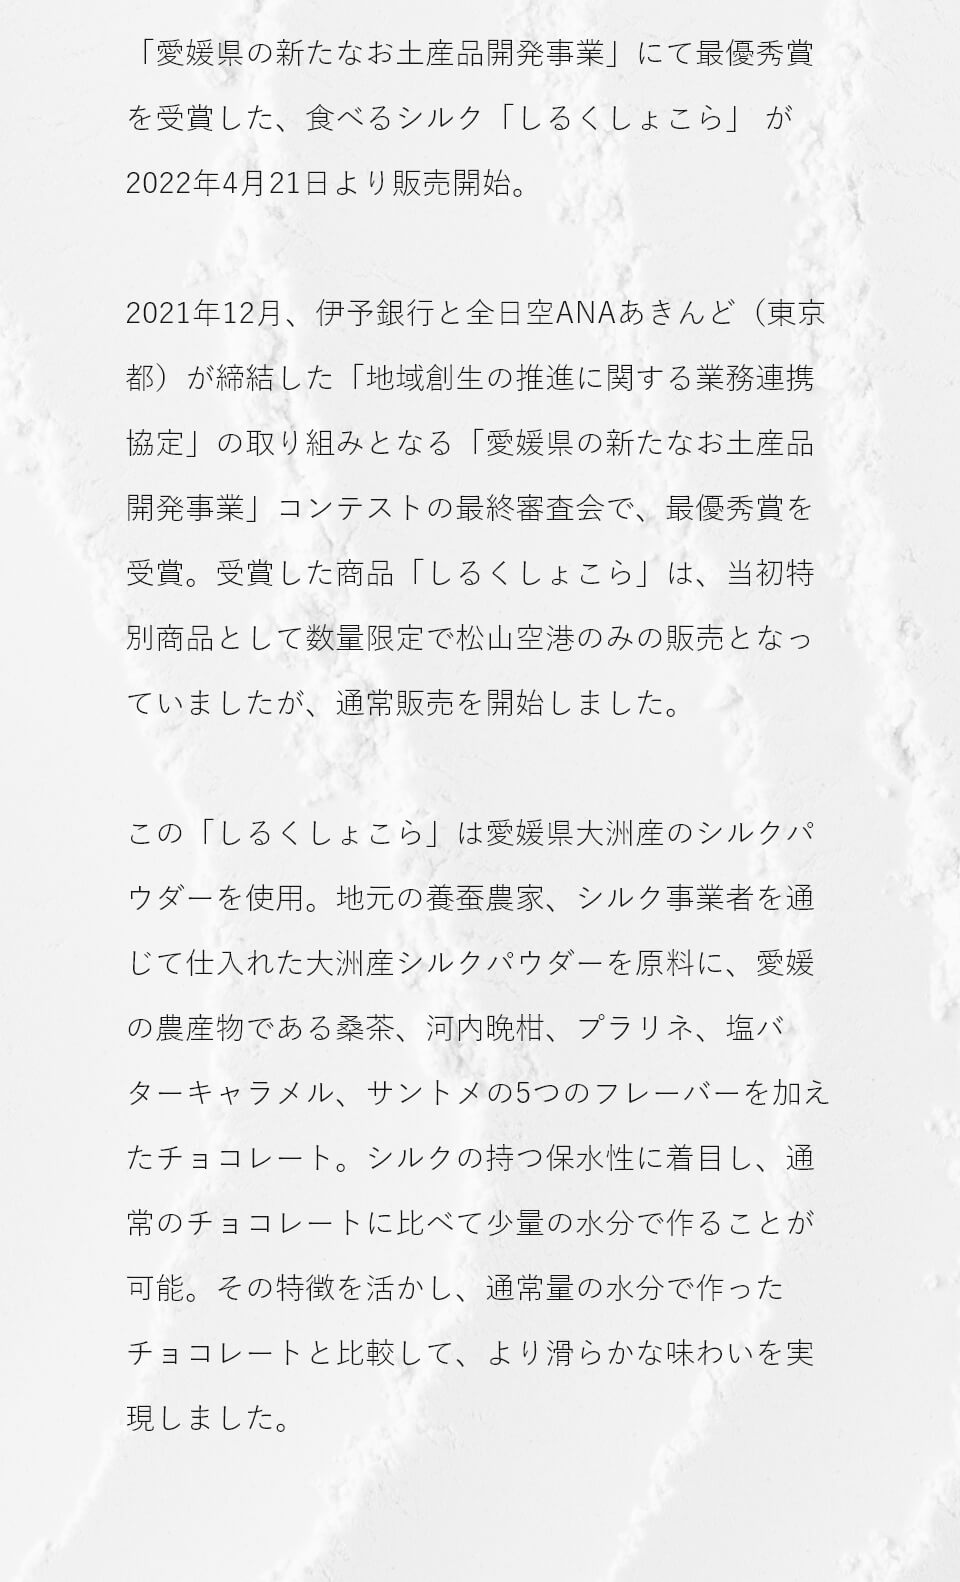 「愛媛県の新たなお土産品開発事業」にて最優秀賞を受賞した、食べるシルク「しるくしょこら」が2022年4月21日より発売。